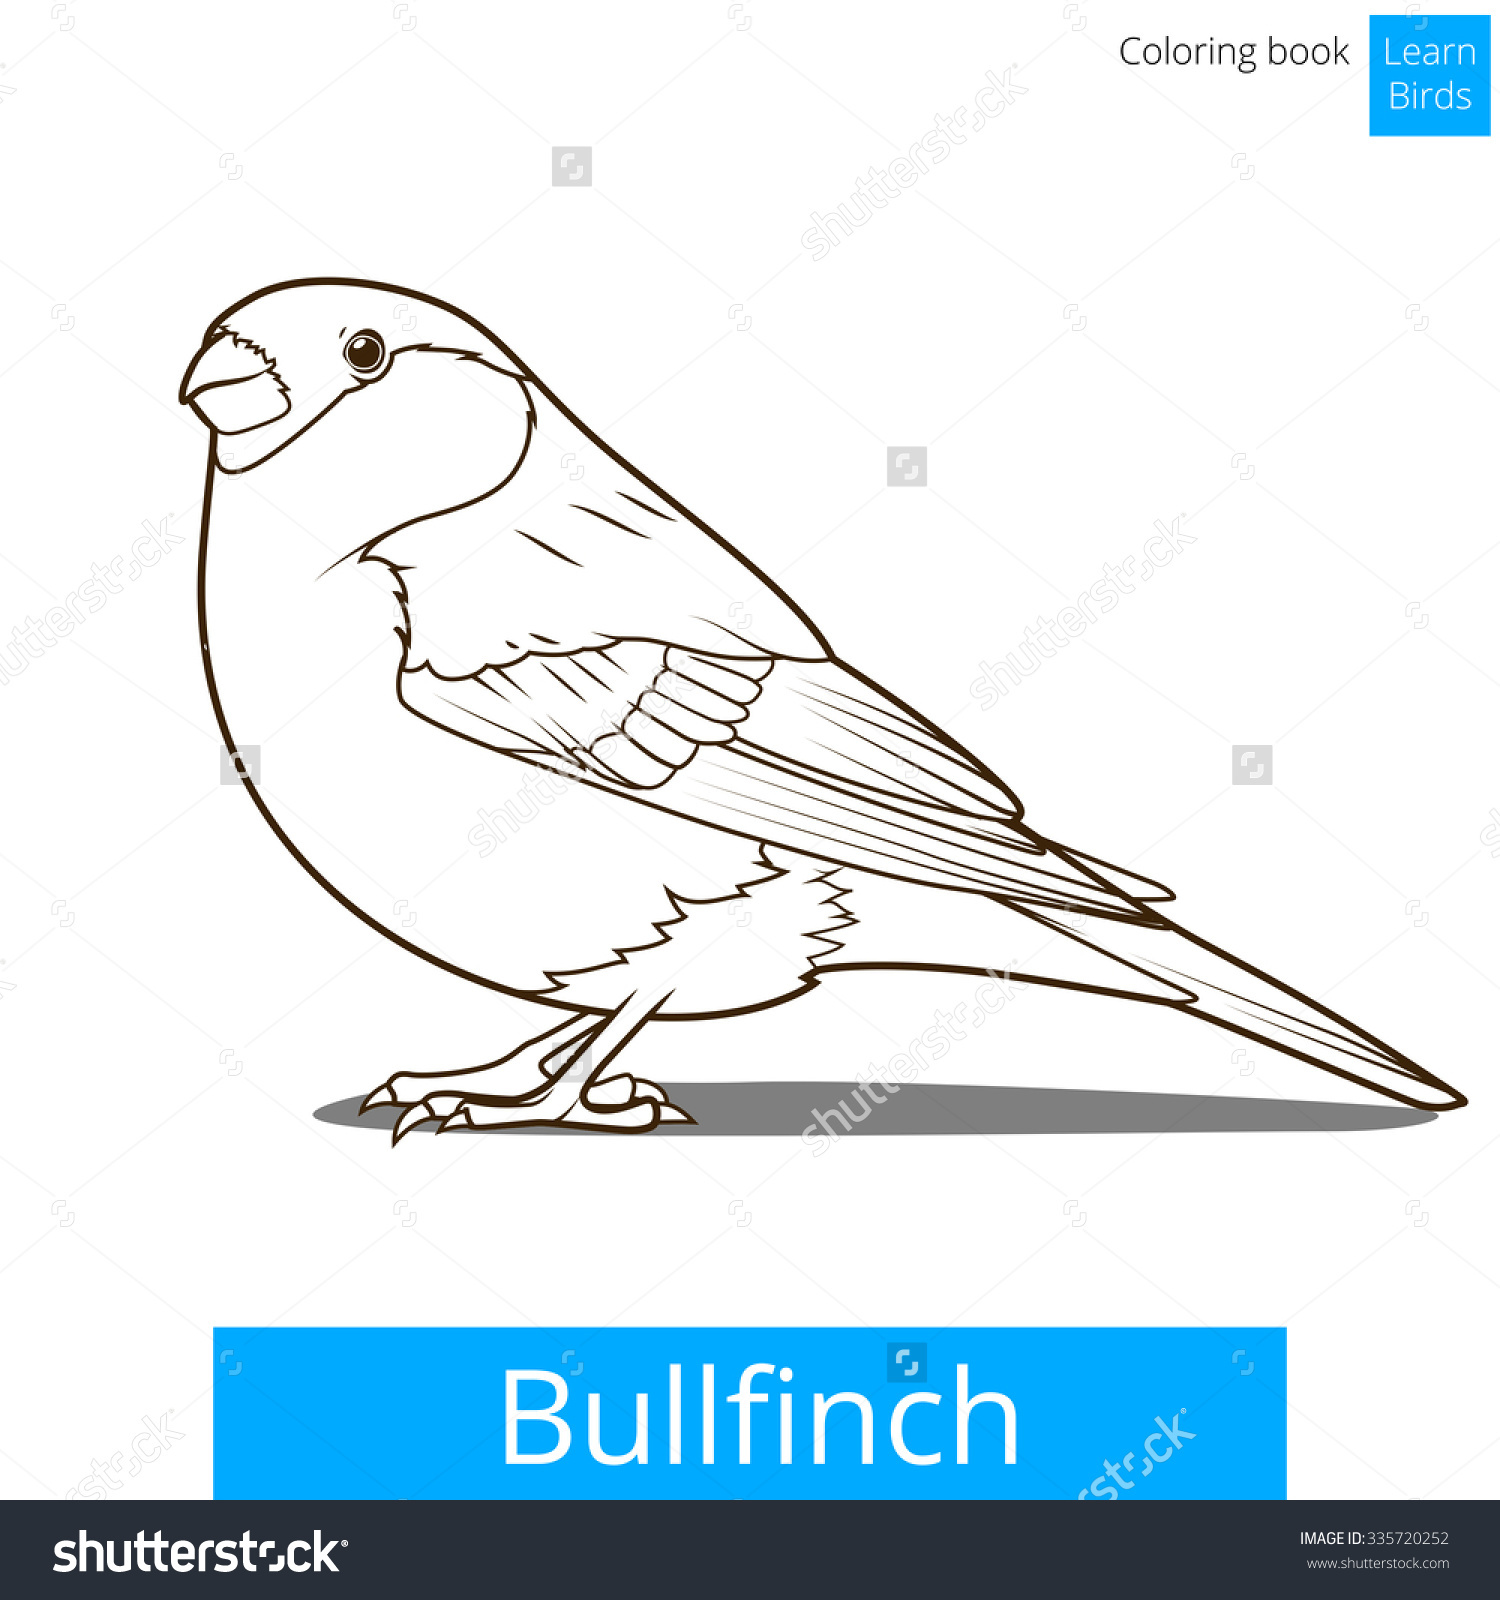 Bullfinch coloring #7, Download drawings